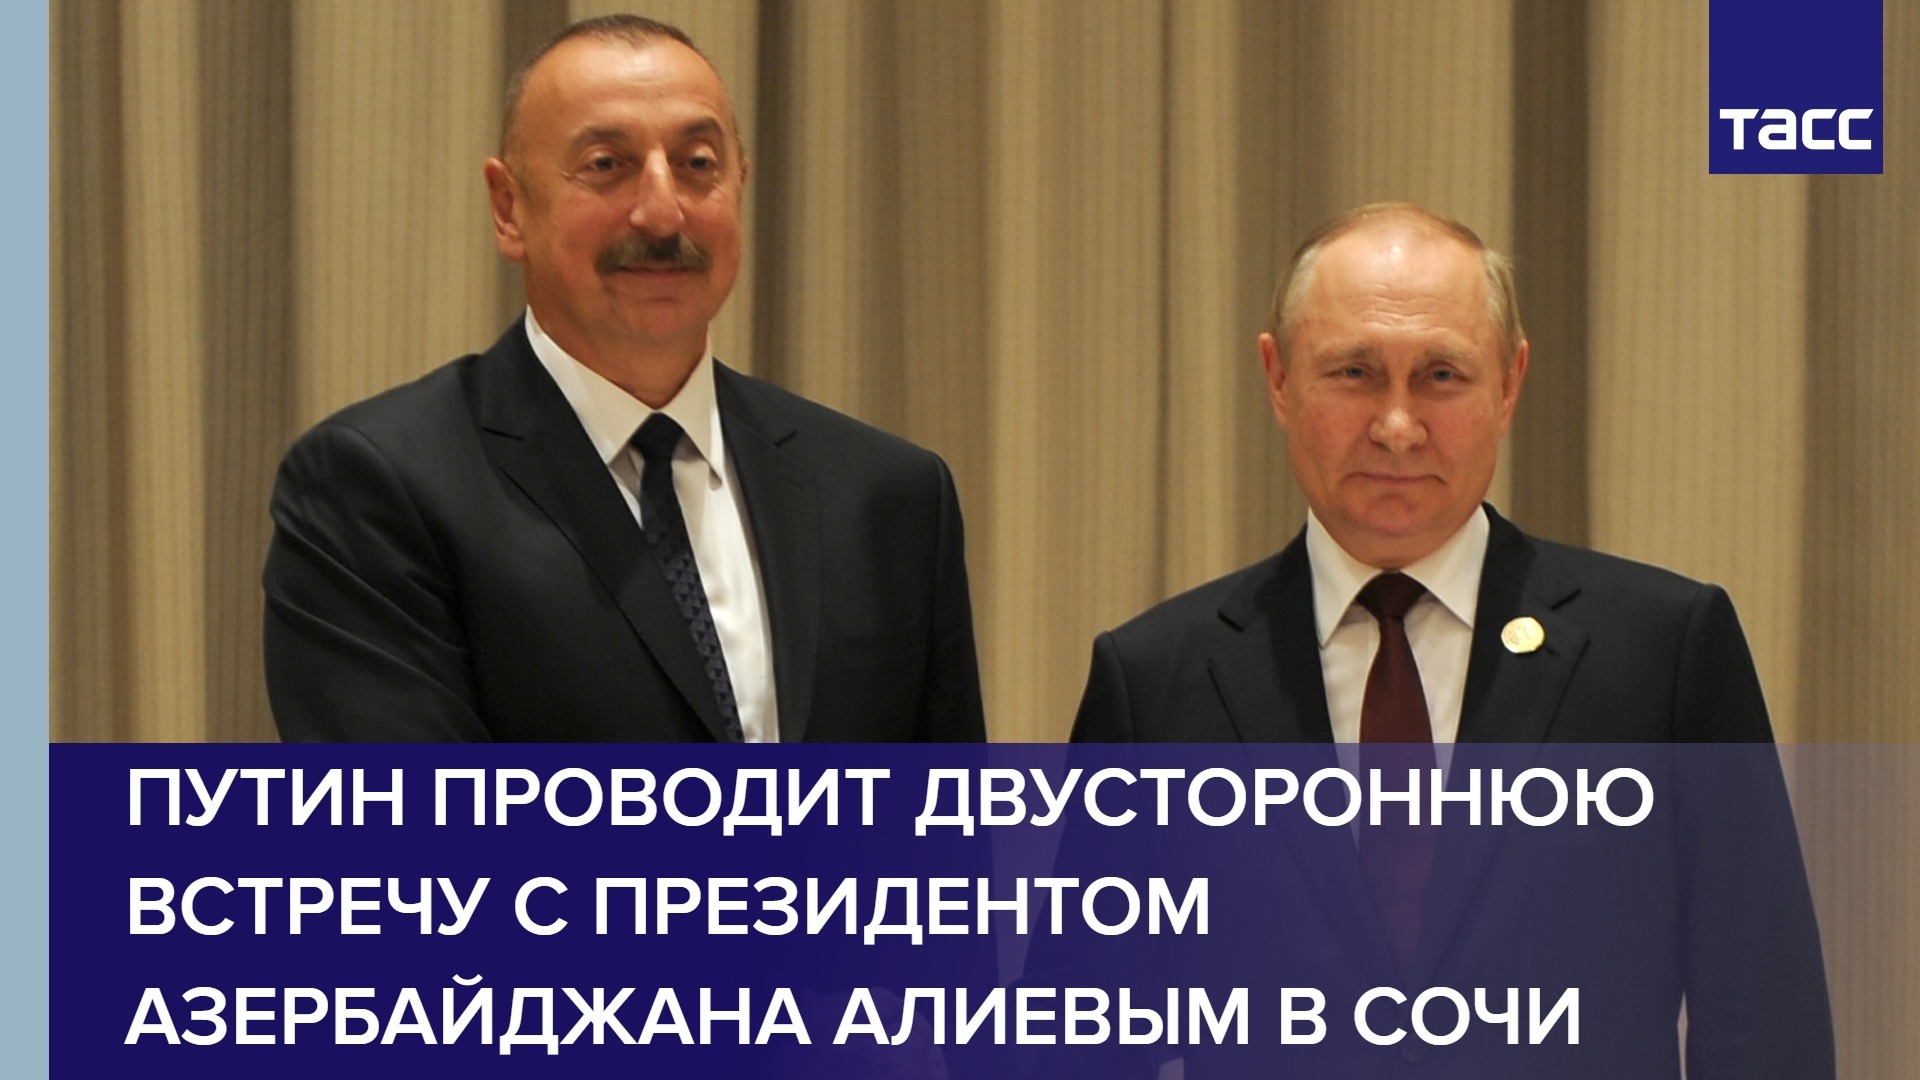 Путин проводит двустороннюю встречу с президентом Азербайджана Алиевым в Сочи